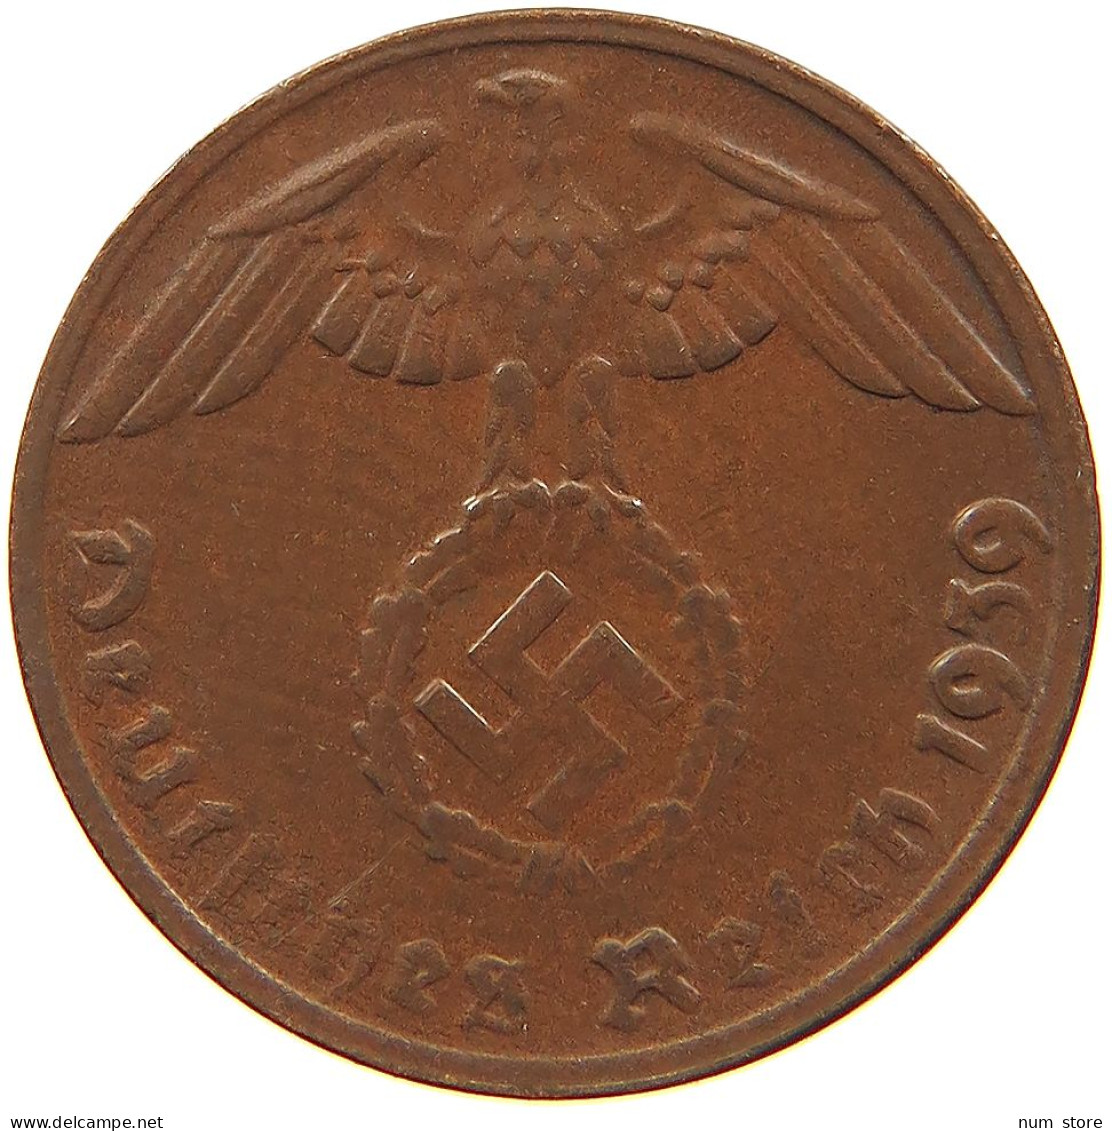 GERMANY 1 REICHSPFENNIG 1939 G #s081 0065 - 1 Reichspfennig